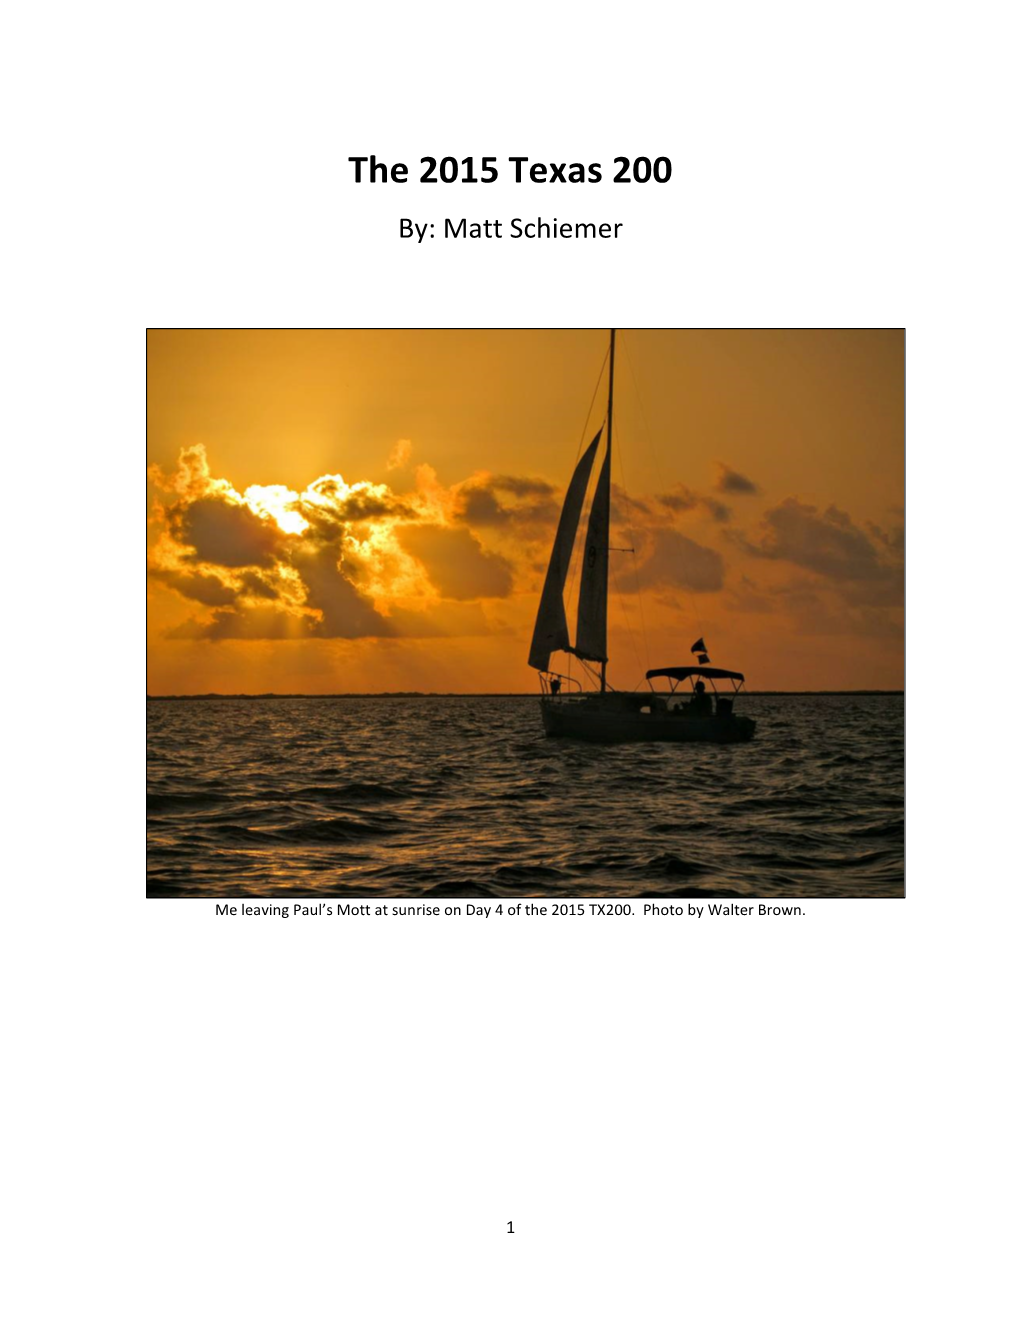 The 2015 Texas 200 By: Matt Schiemer